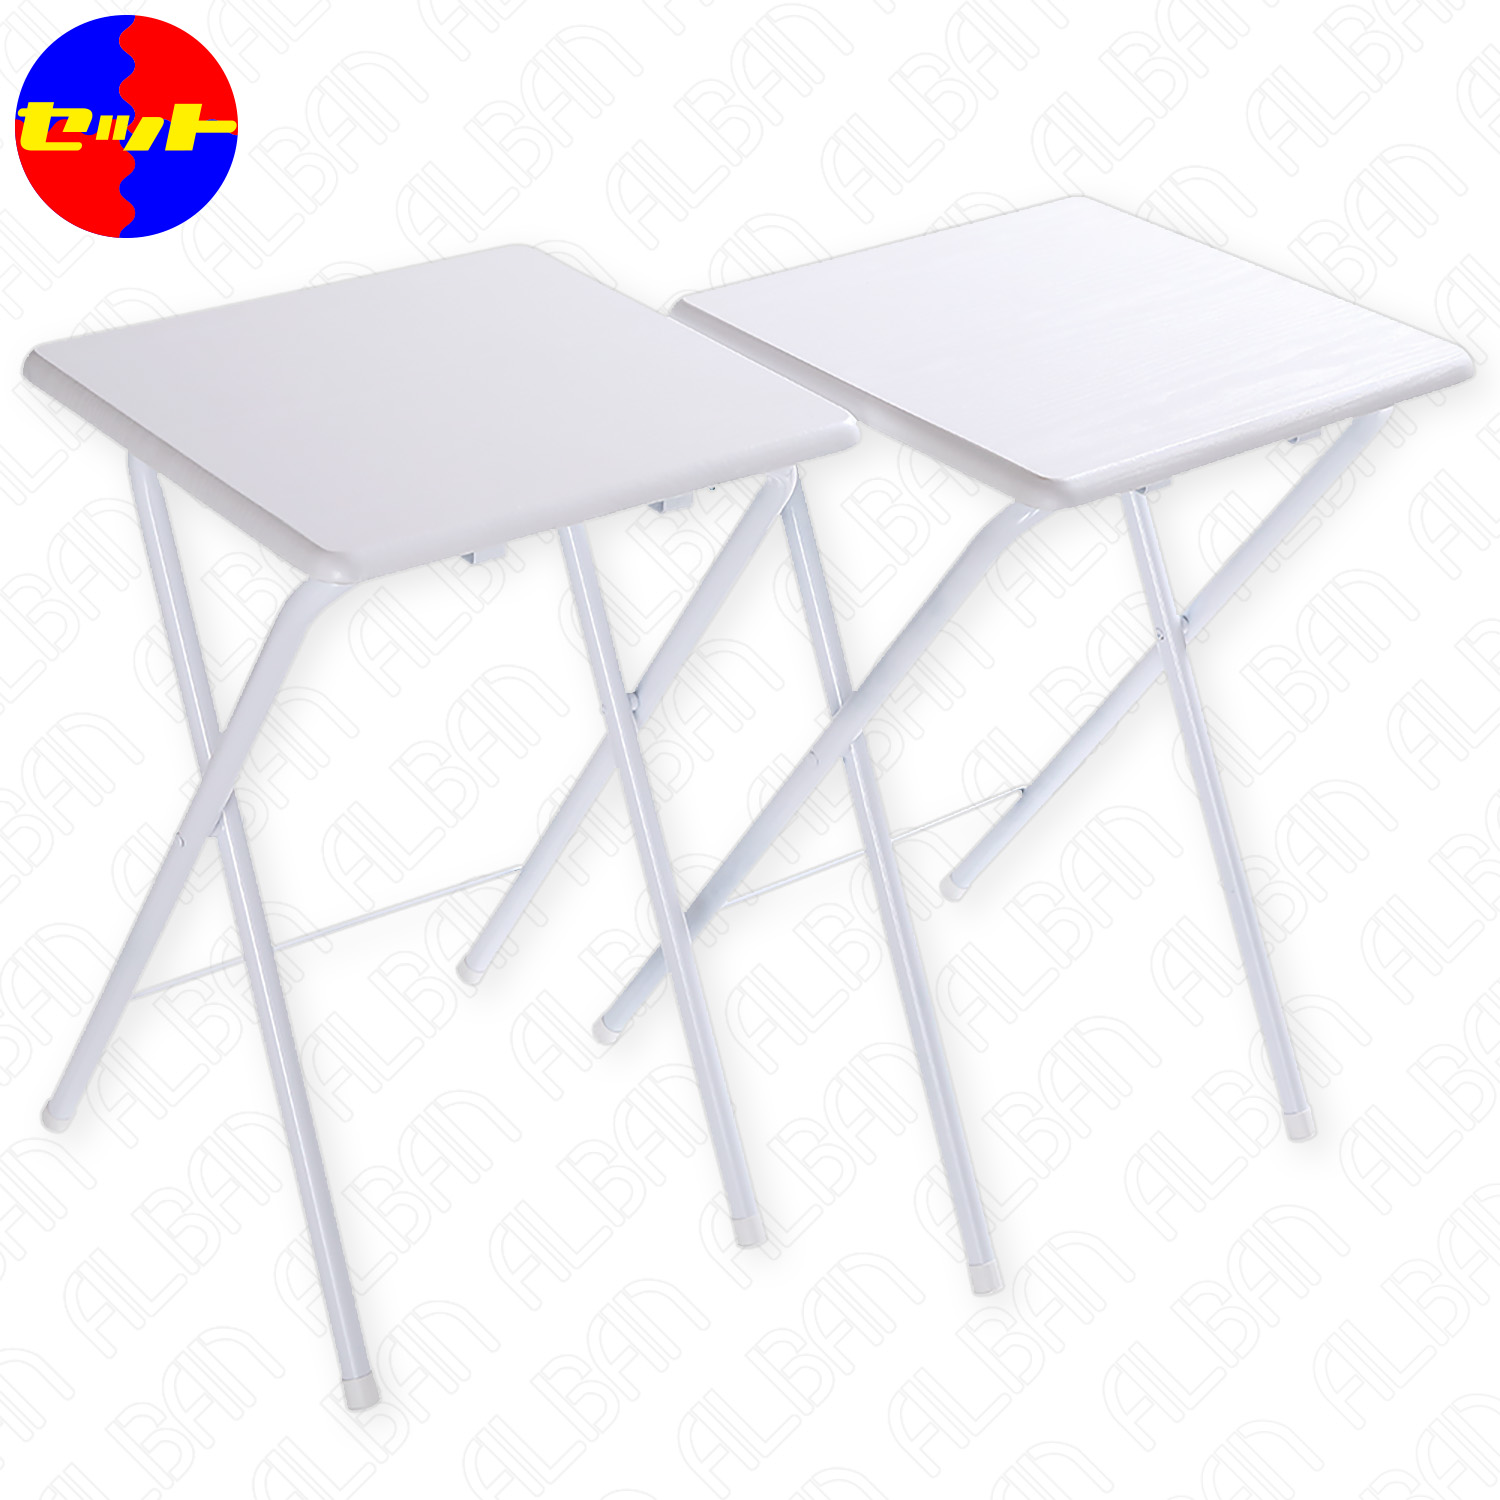 【セット販売】折りたたみサイドテーブル(ホワイト)【組立不要】軽量・スリム・コンパクト